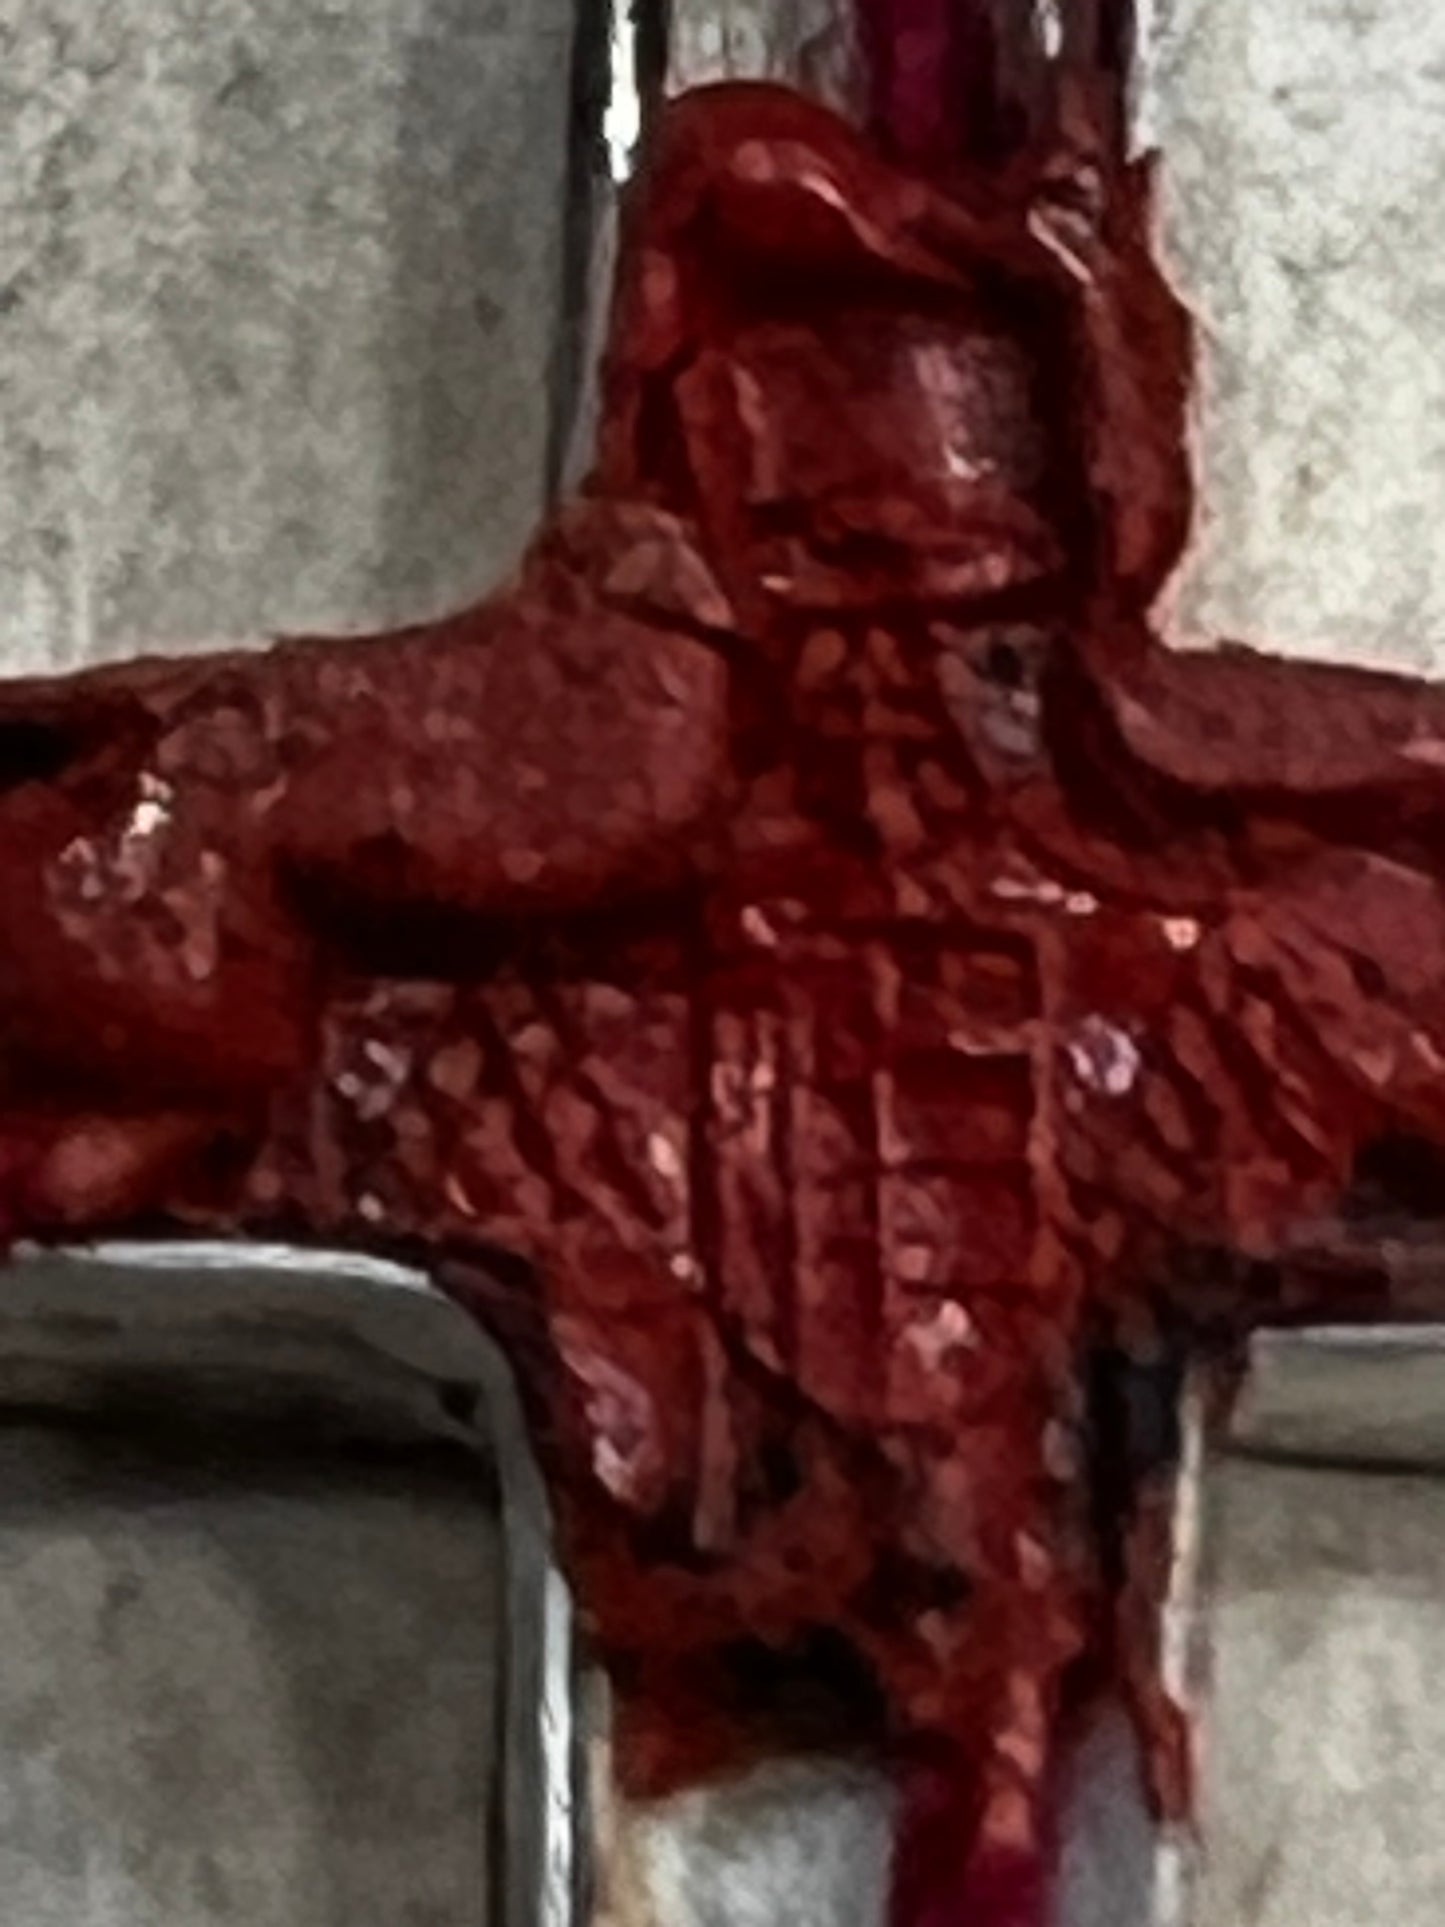 Croix reliquaire argent contenant relique de la Vraie Croix.